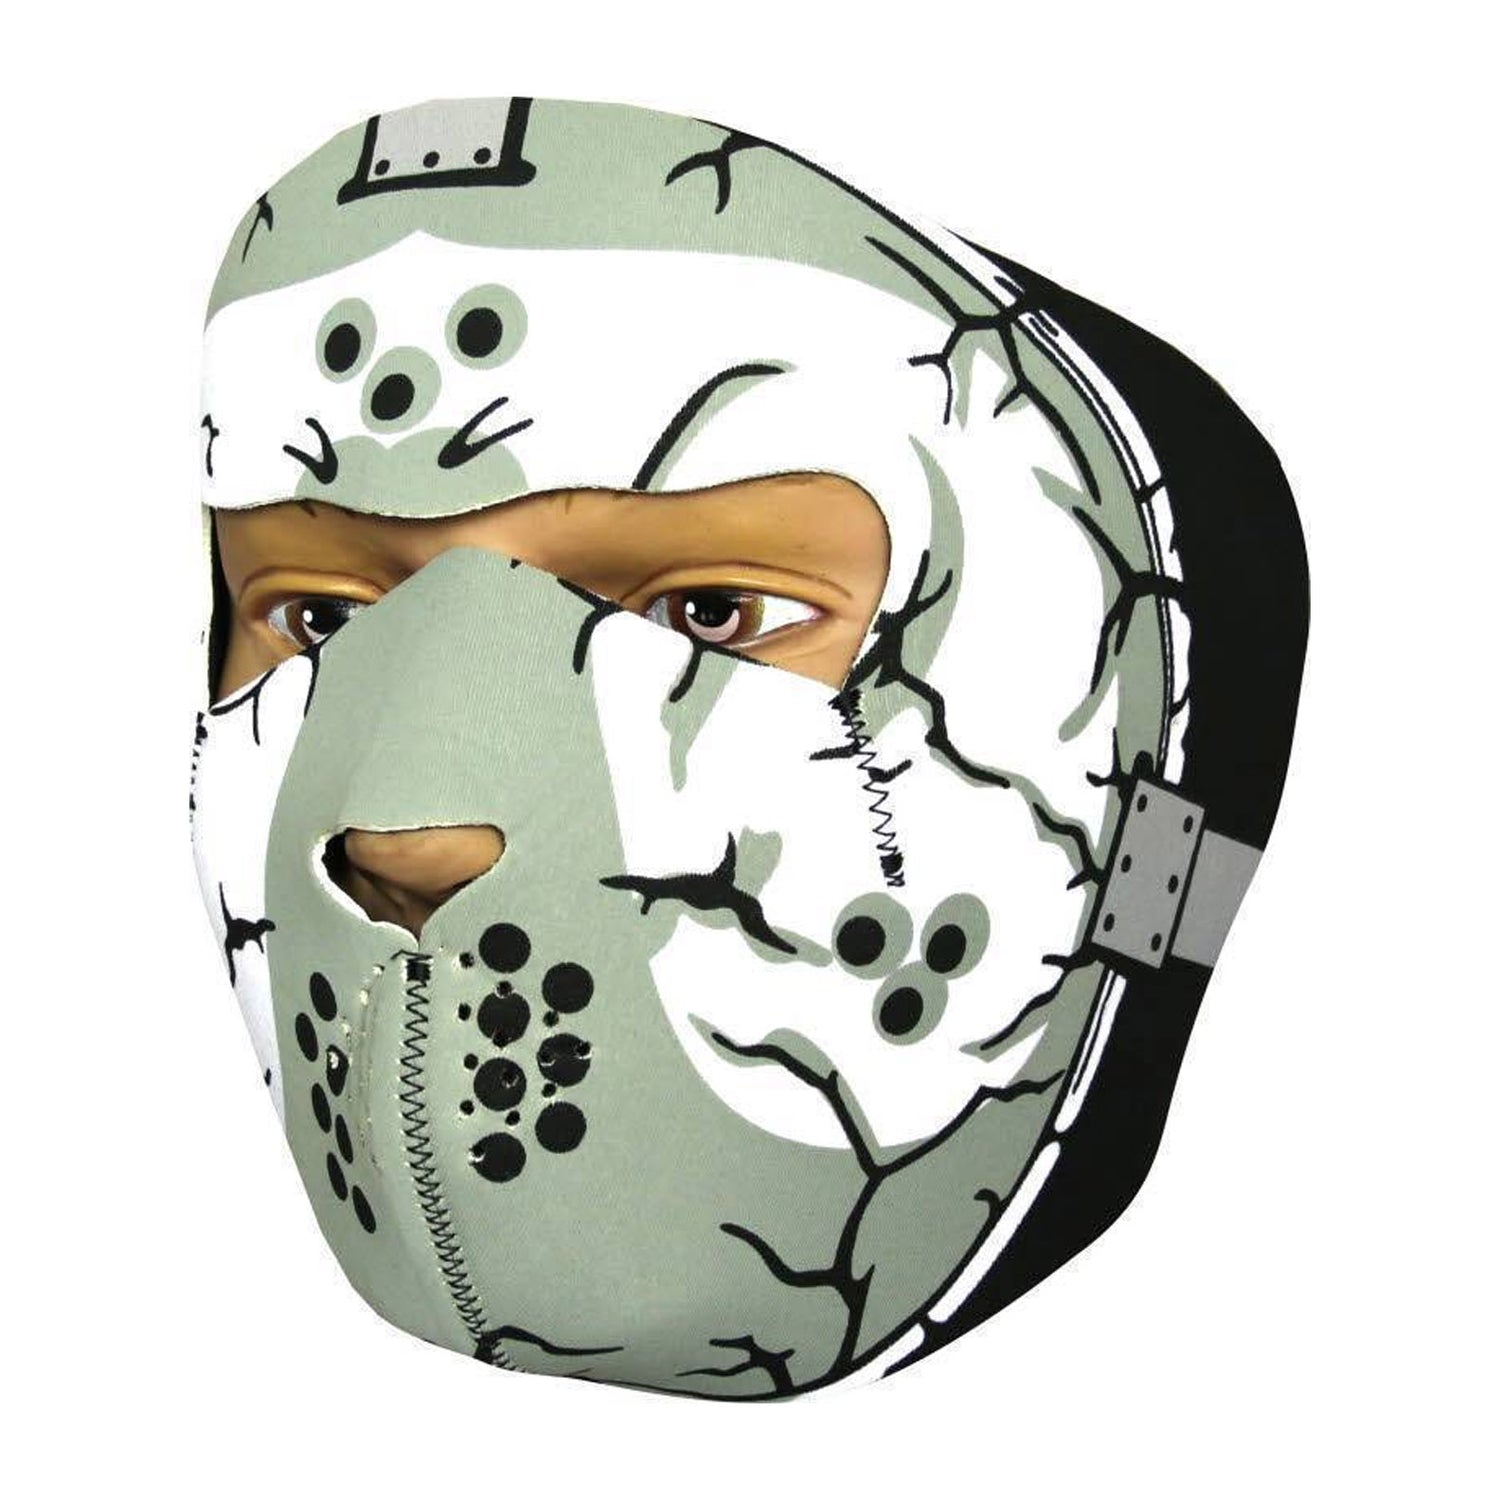 Viper-Neoprene-Full-Face-Masks